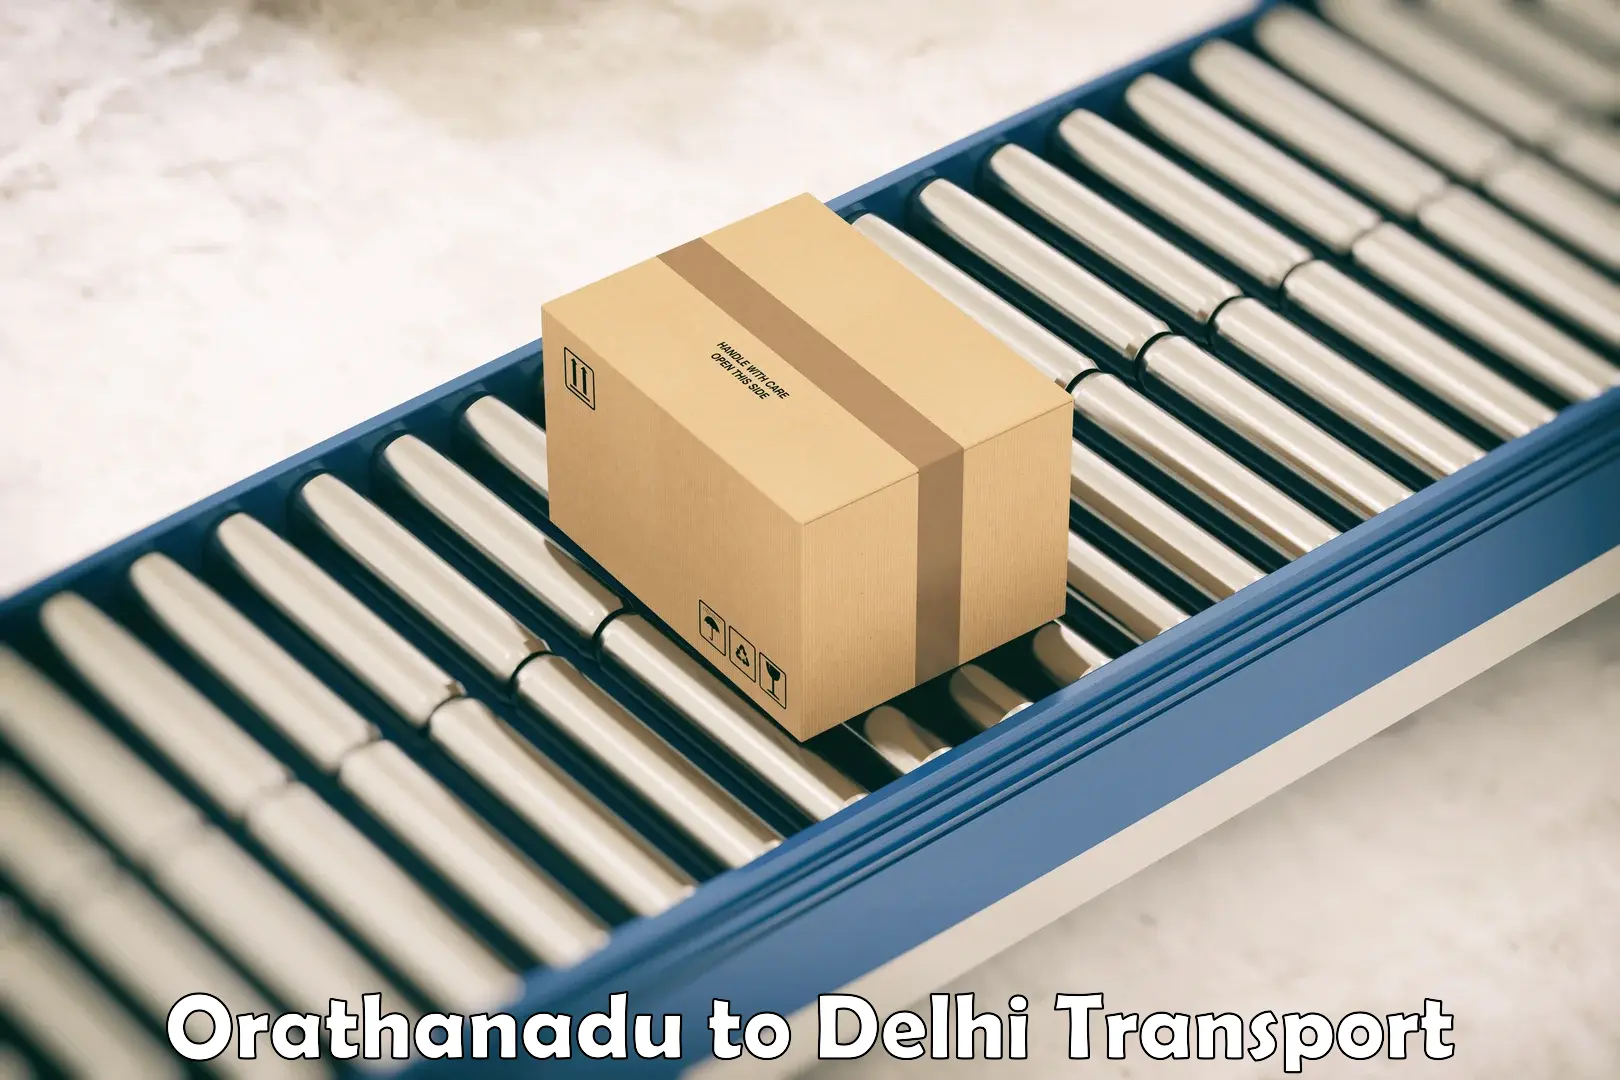 Two wheeler parcel service Orathanadu to IIT Delhi